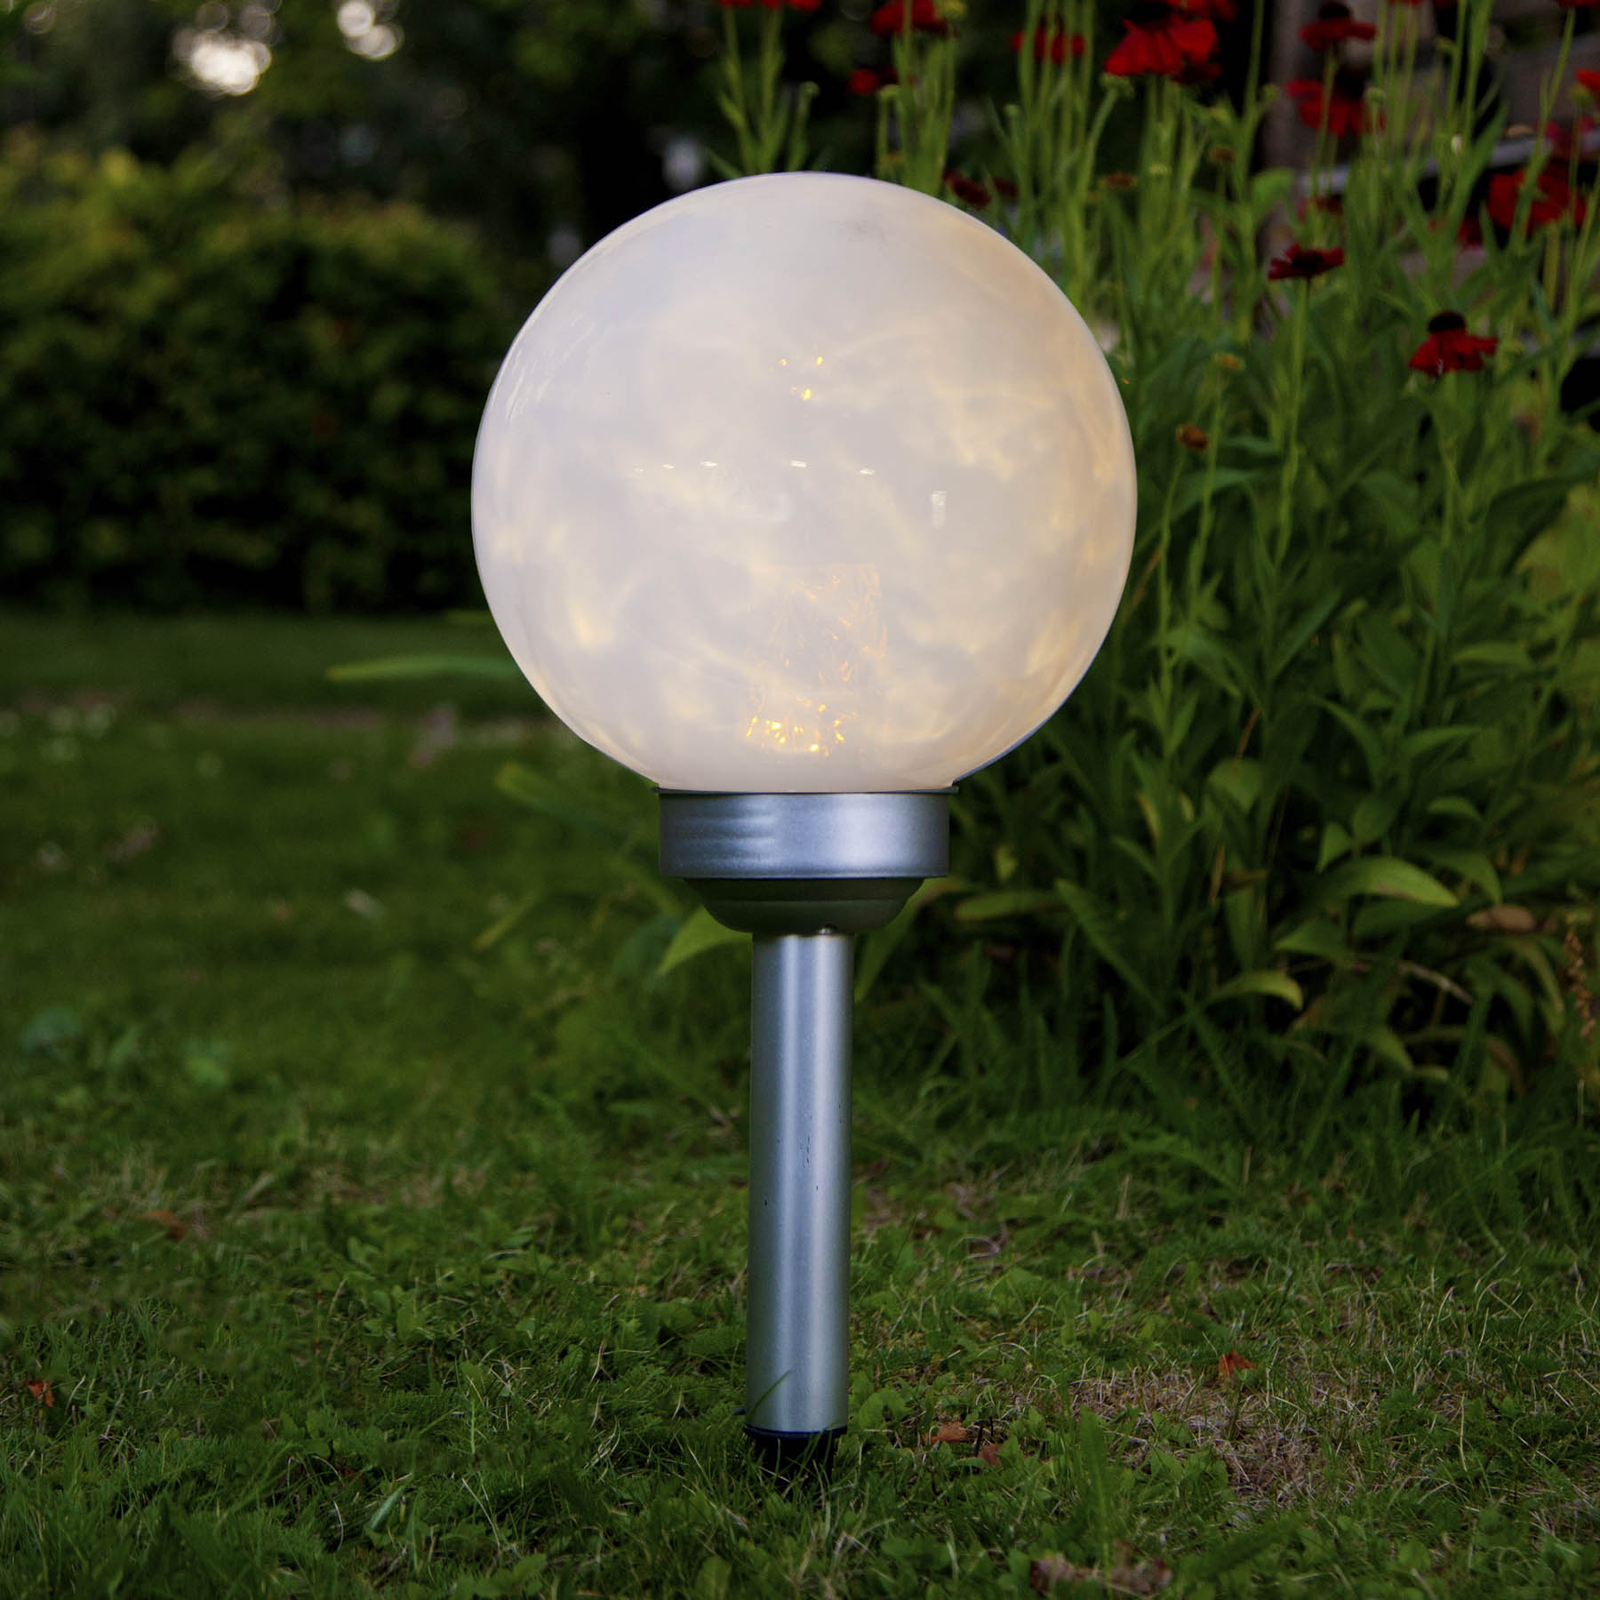 Trottoir Mammoet meerderheid LED lamp op zonne-energie Lunay, draaiende lamp | Lampen24.nl